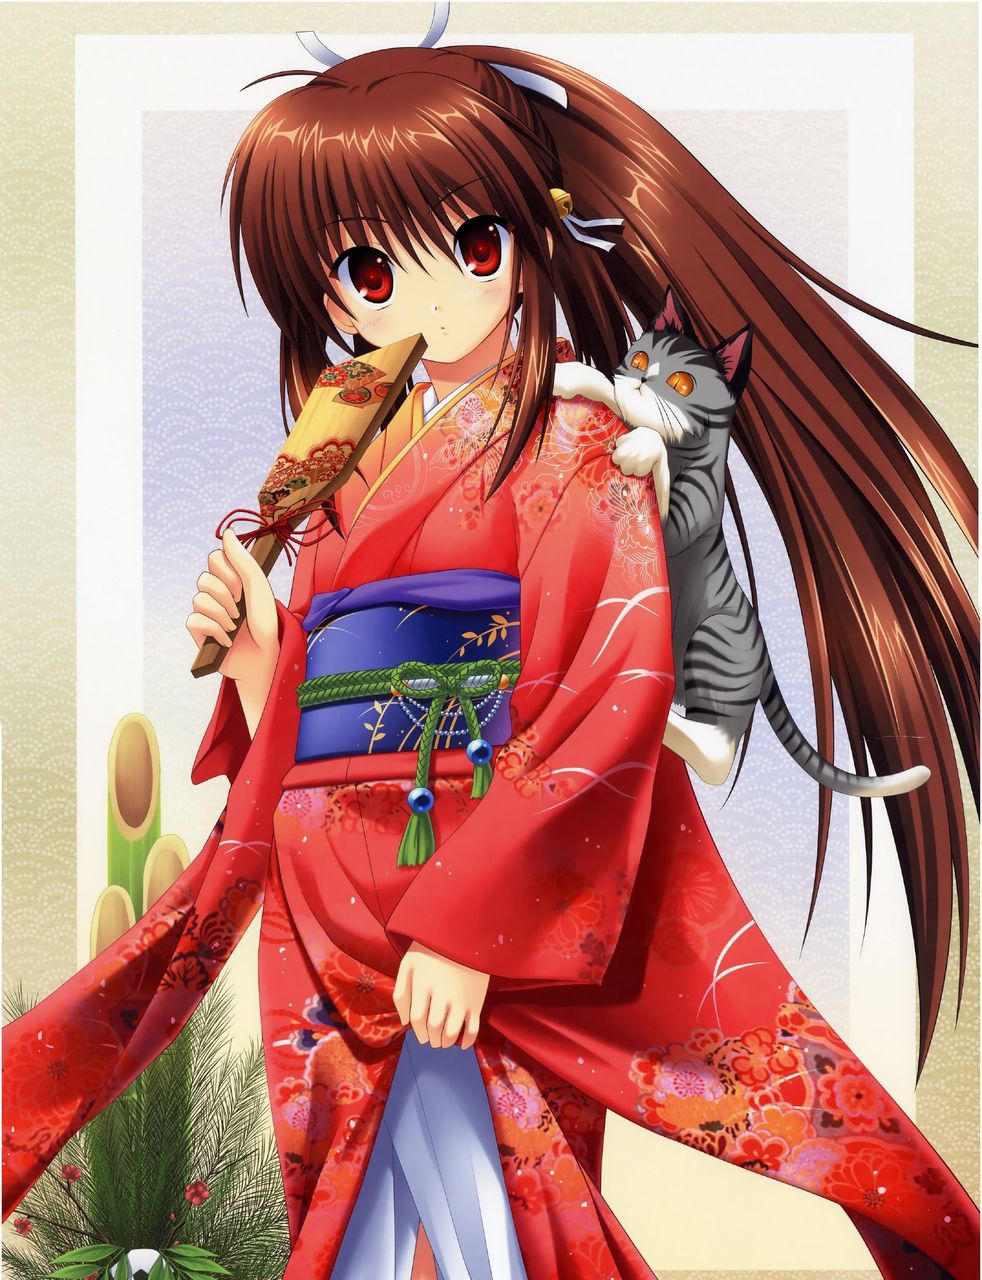 [2次] beautiful kimono girls secondary image 21 [kimono: 8